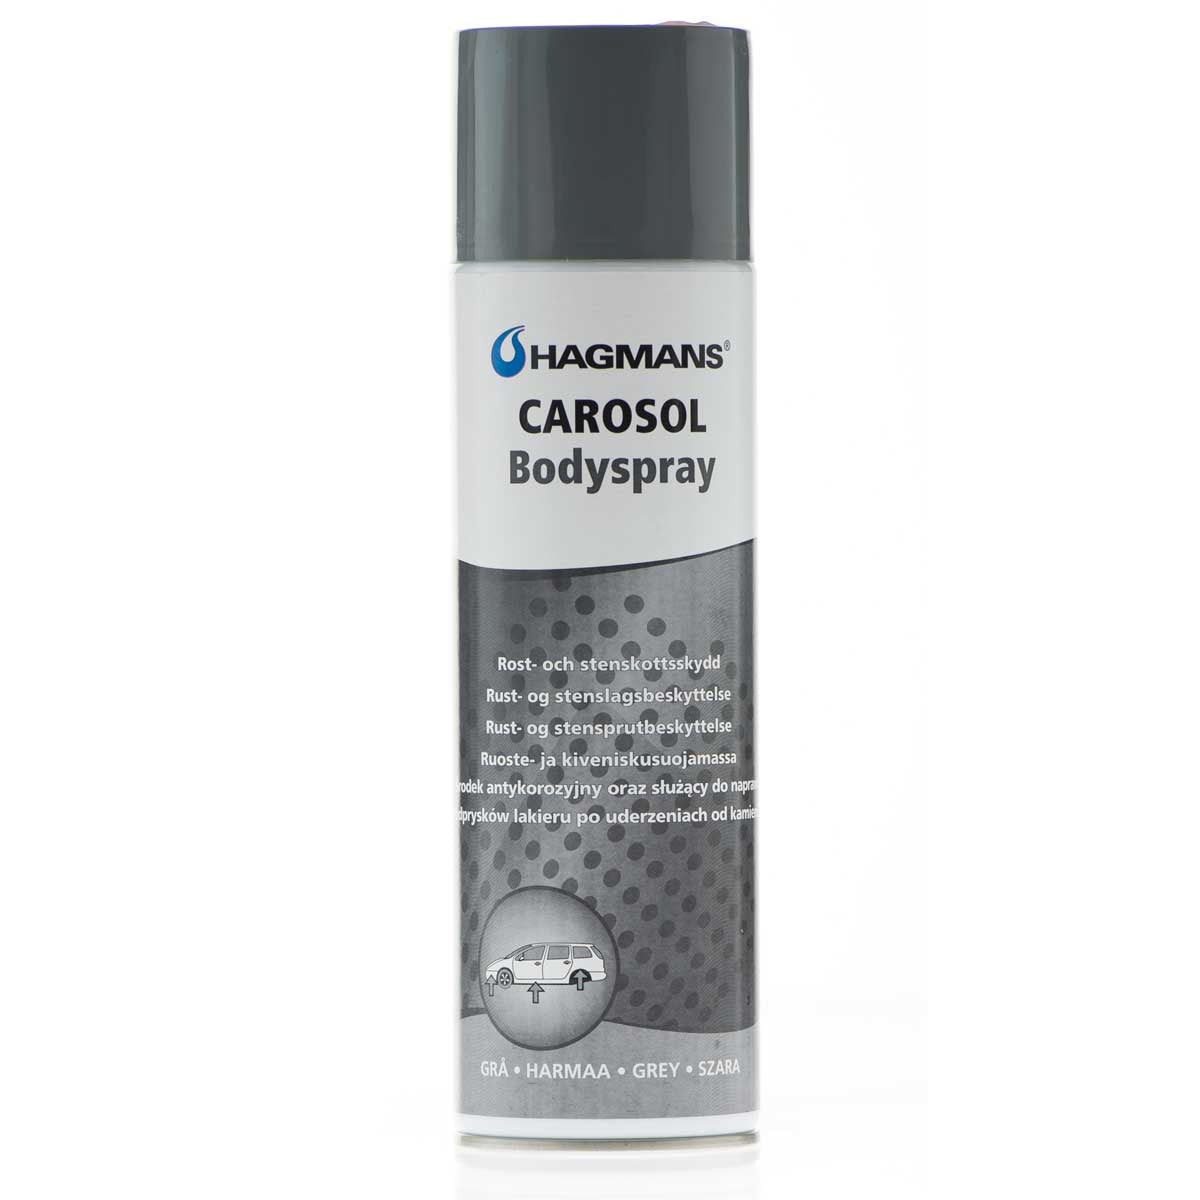 Carosol bodyspray svart